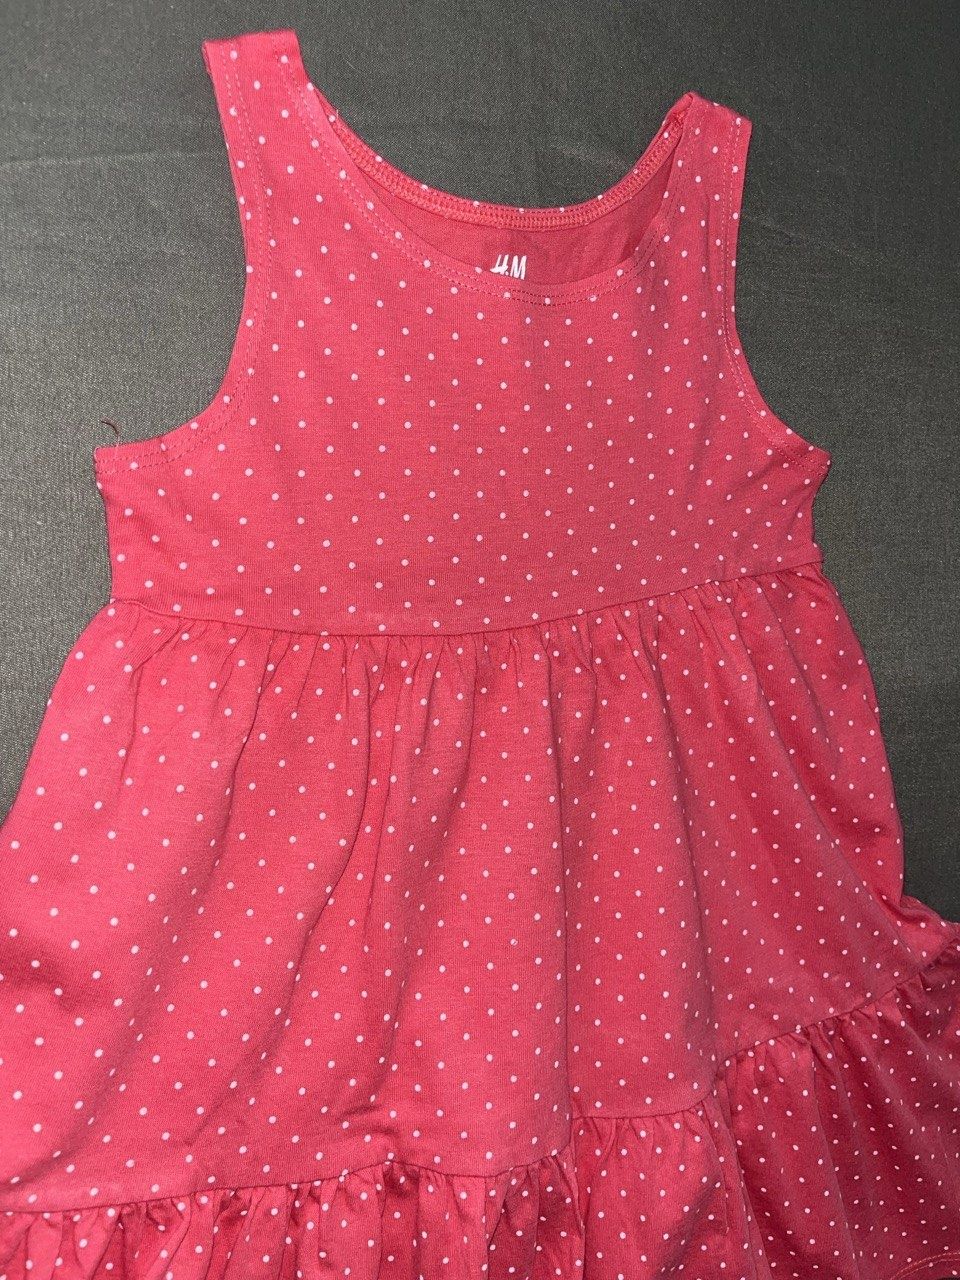 Платье на девочку 2-4 года (98-104) Сарафан на девочку H&M р. 98-104